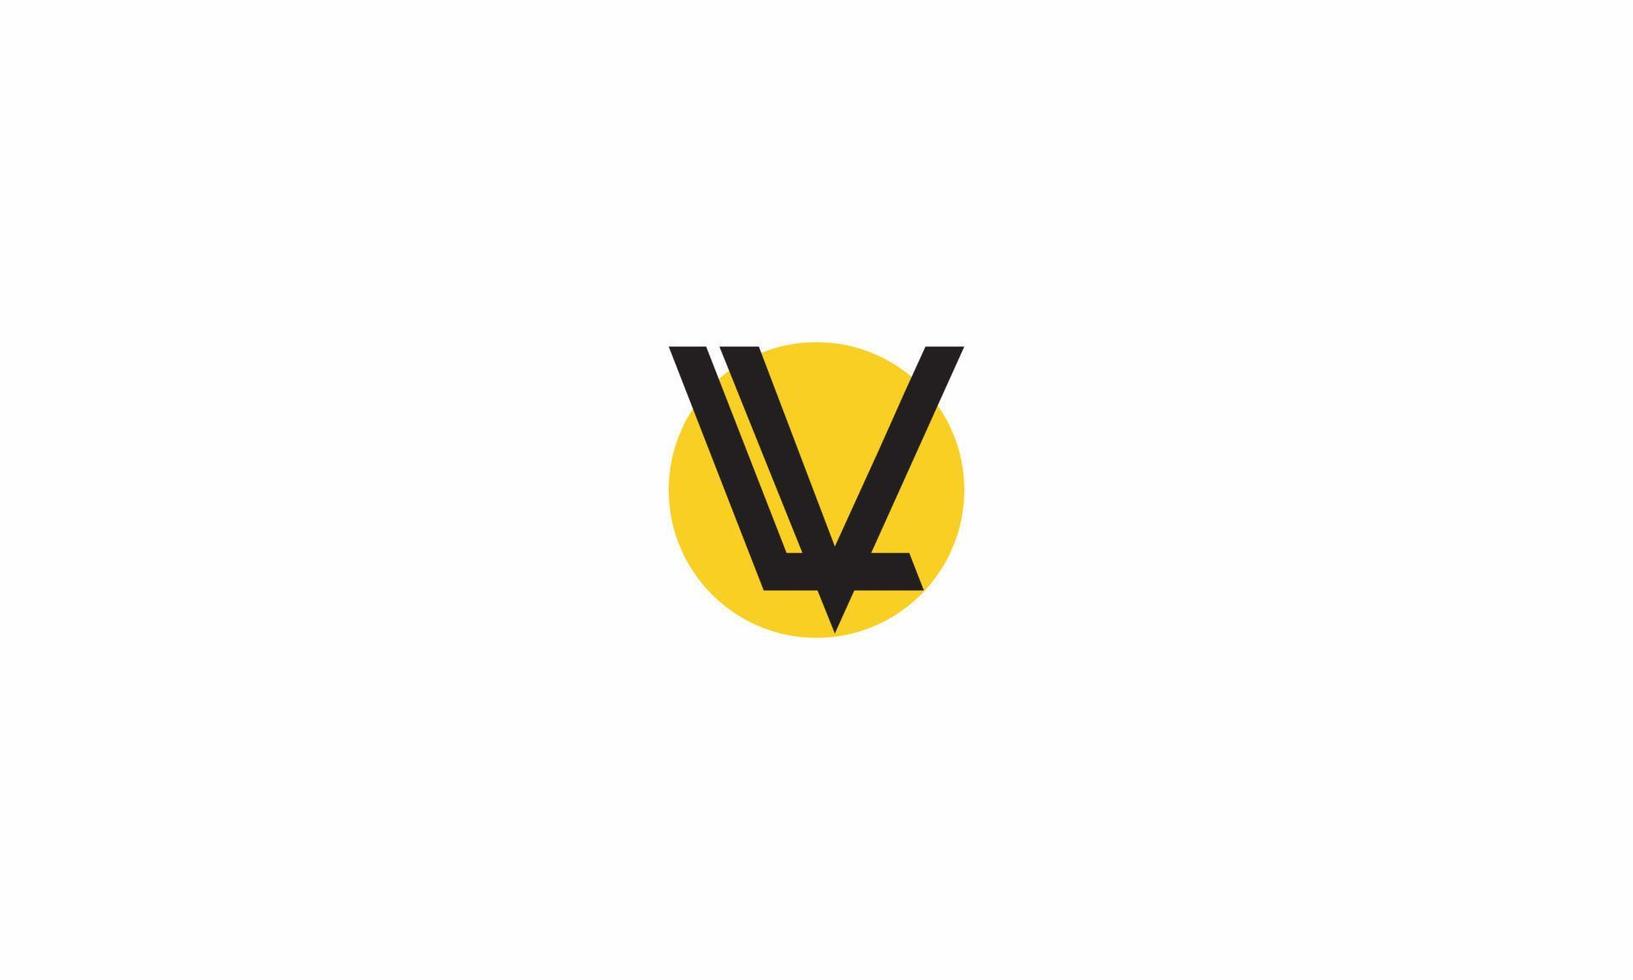 letras del alfabeto iniciales monograma logo lv, vl, l y v vector